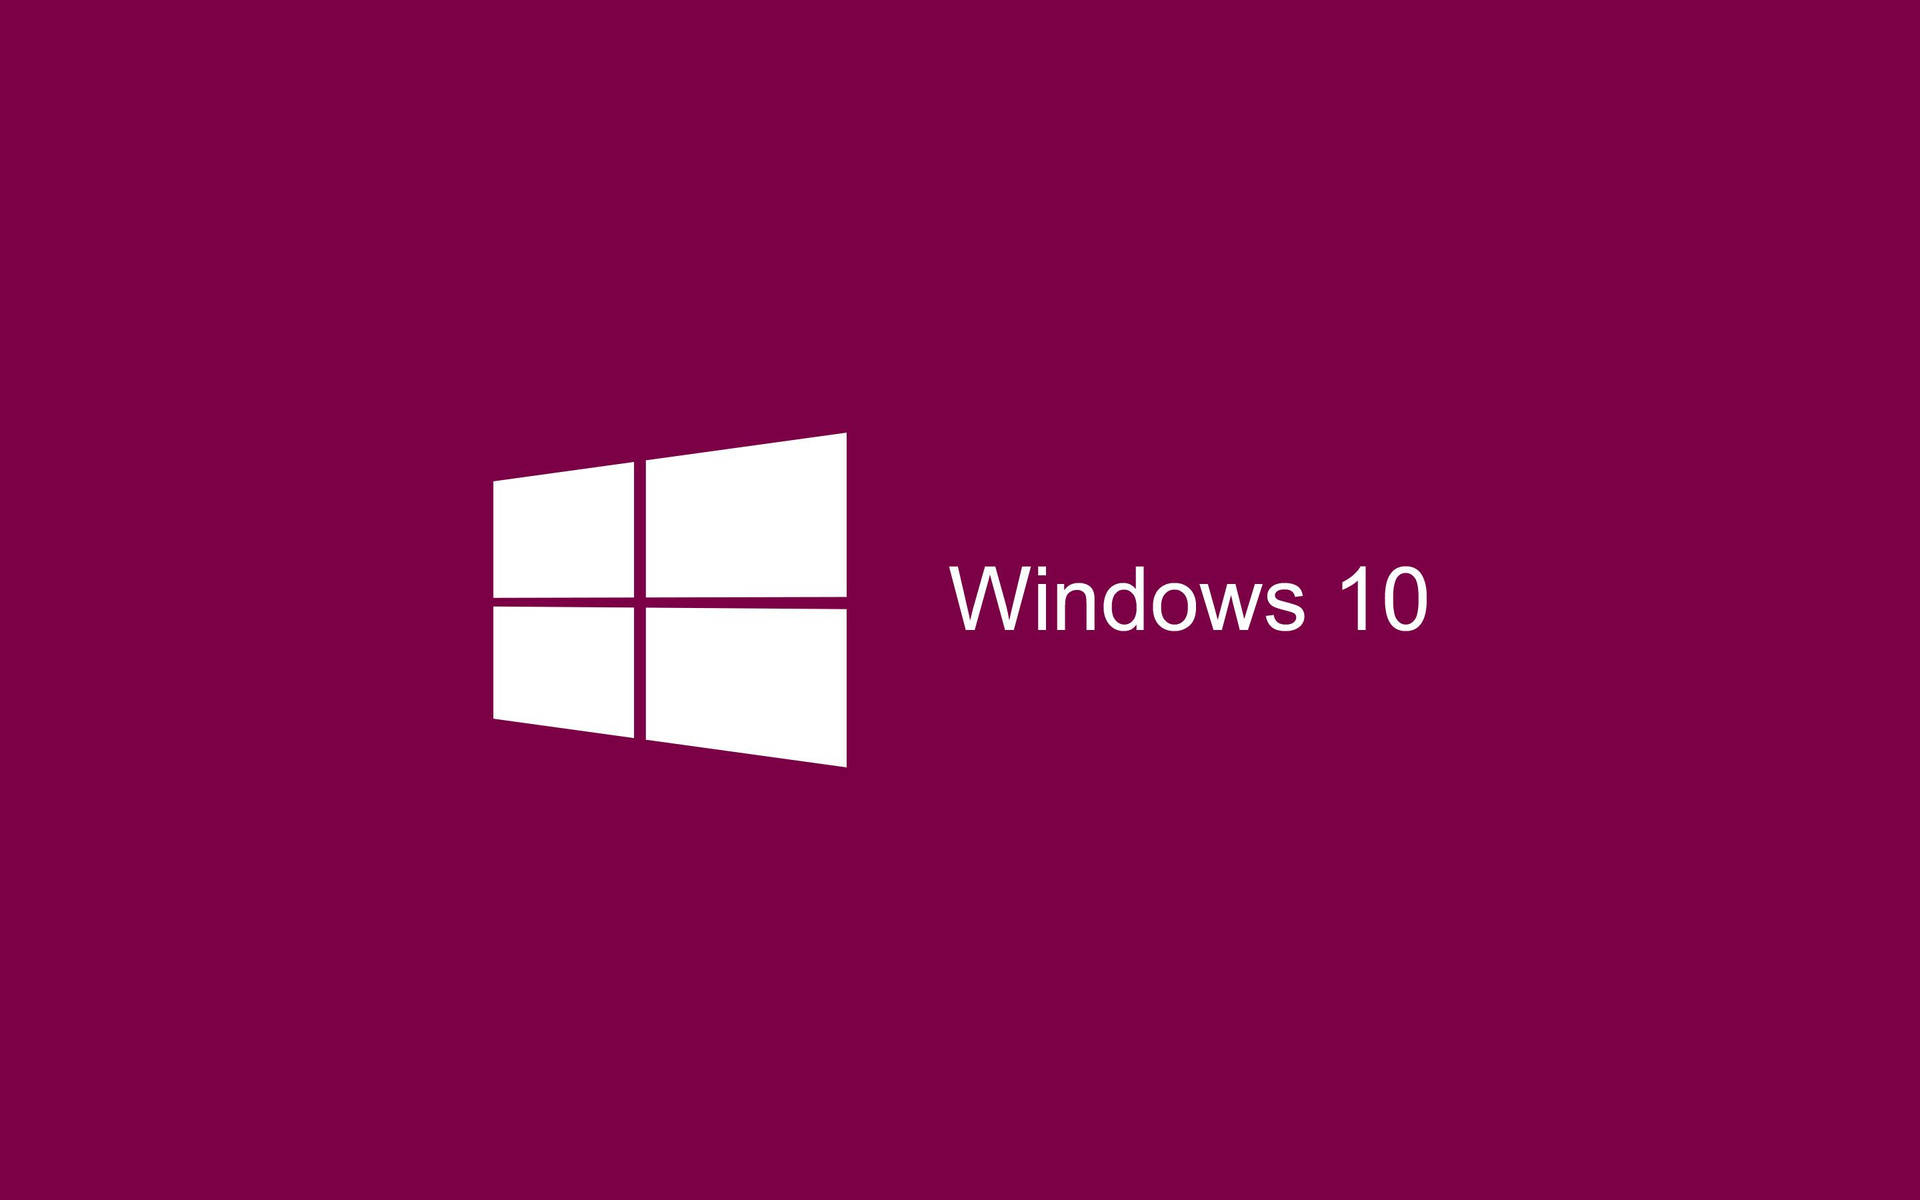 Hot Pink White Windows 10 Logo